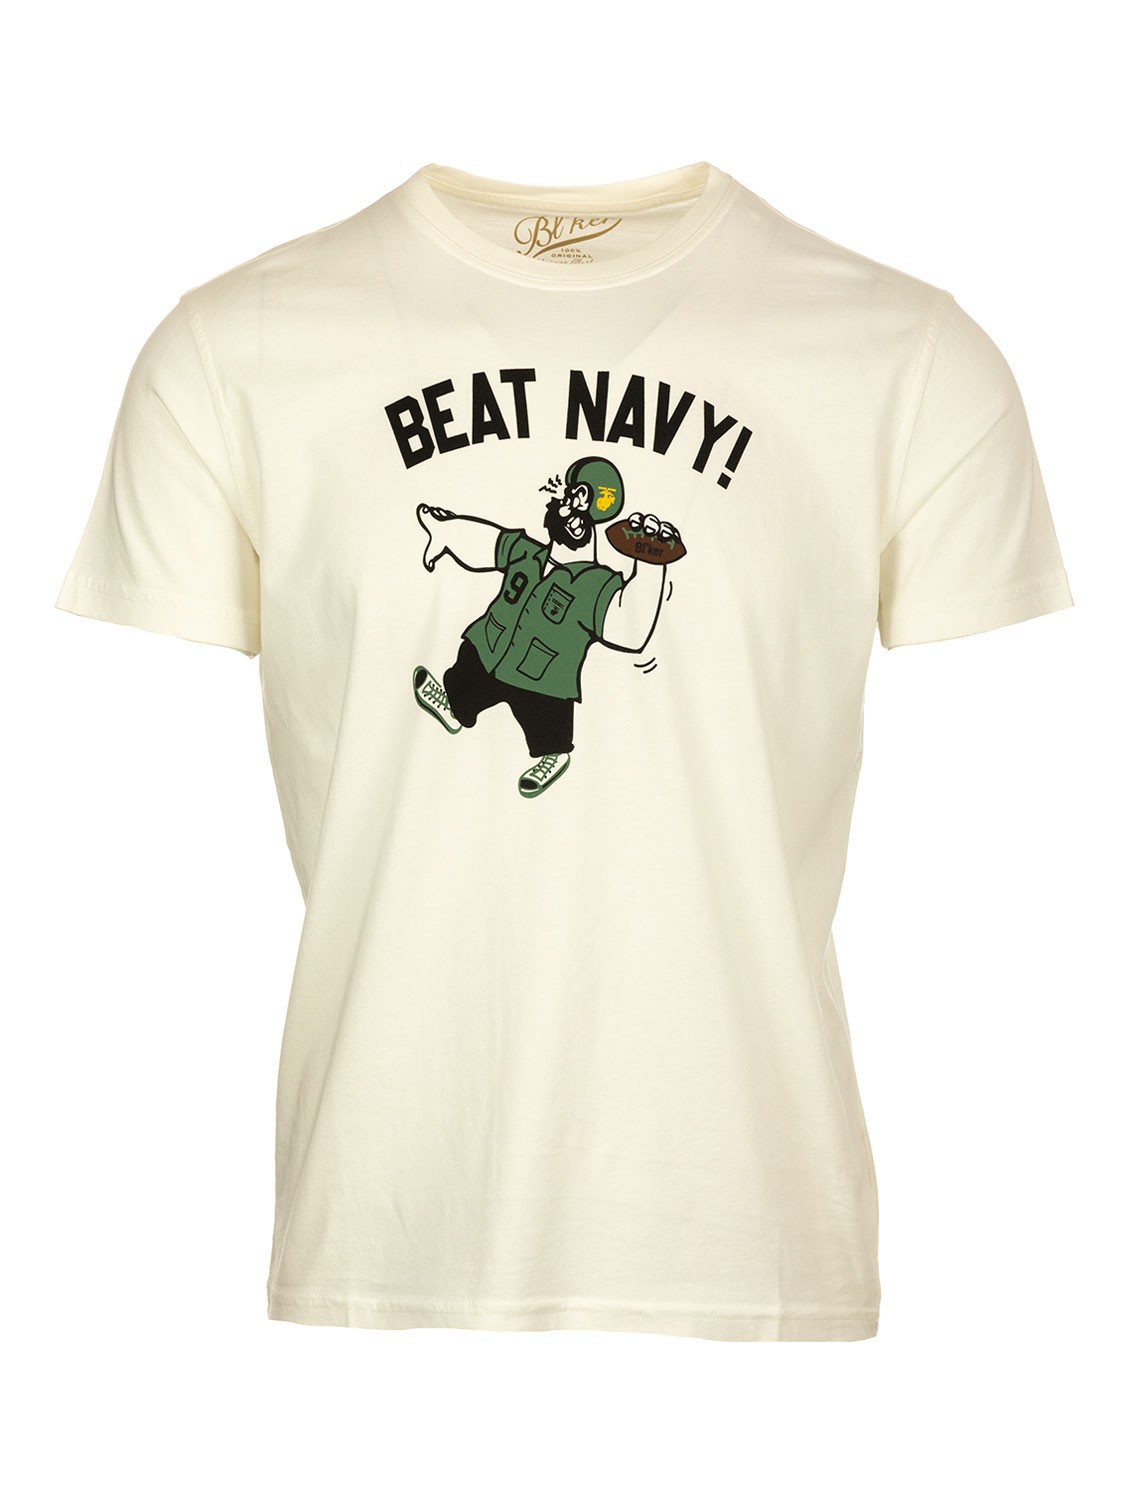 Bl'ker Men's T-shirt Graphic Beat Navy